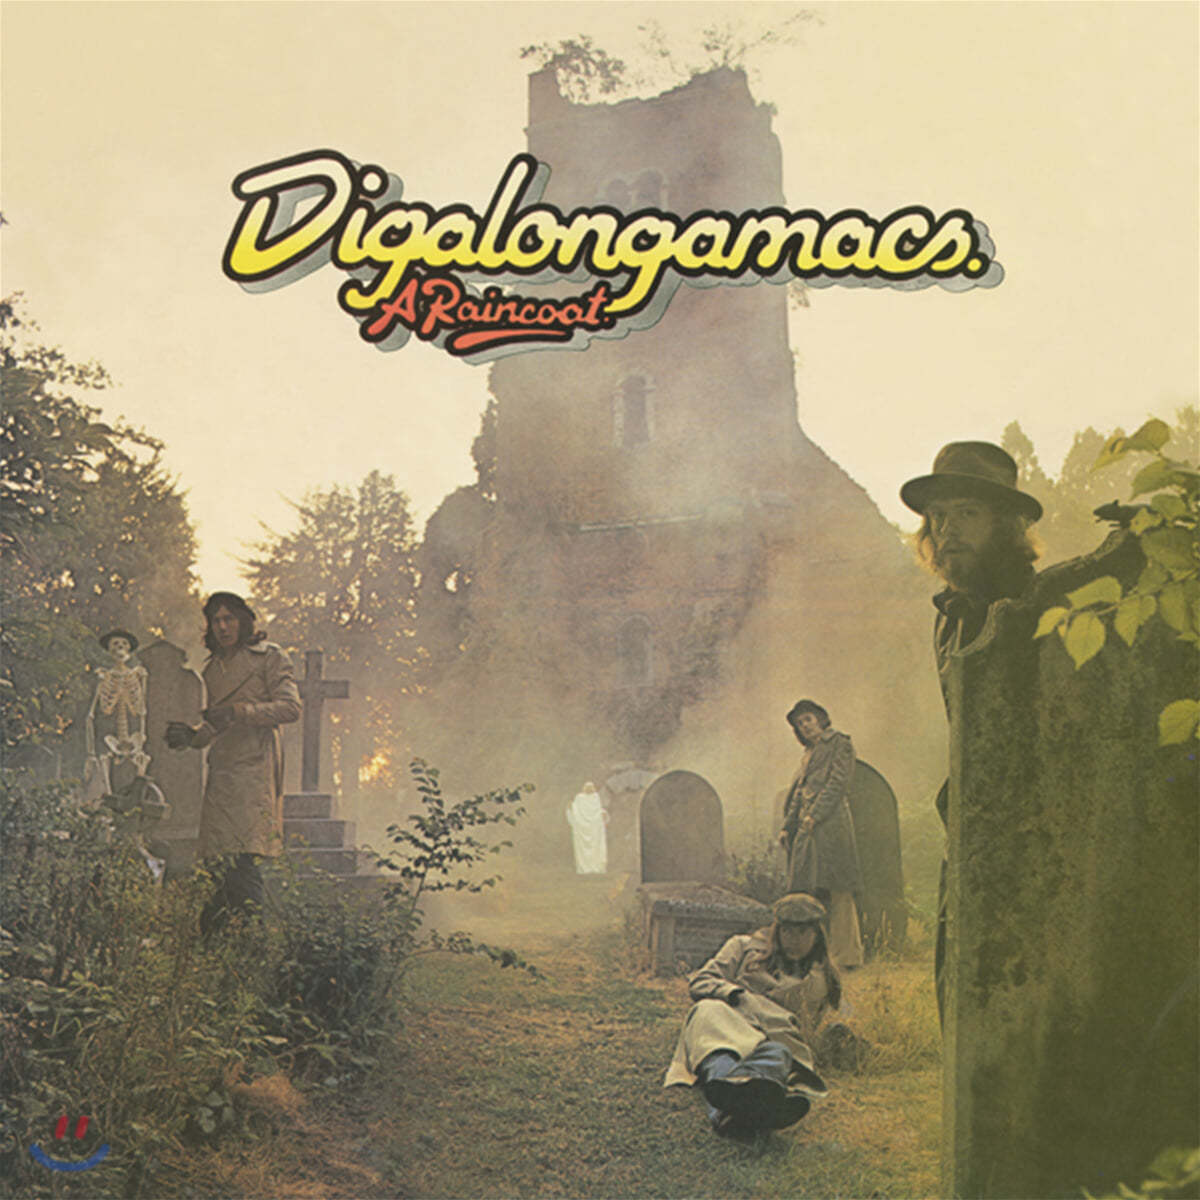 A Raincoat (레인코트) - Digalongamacs 